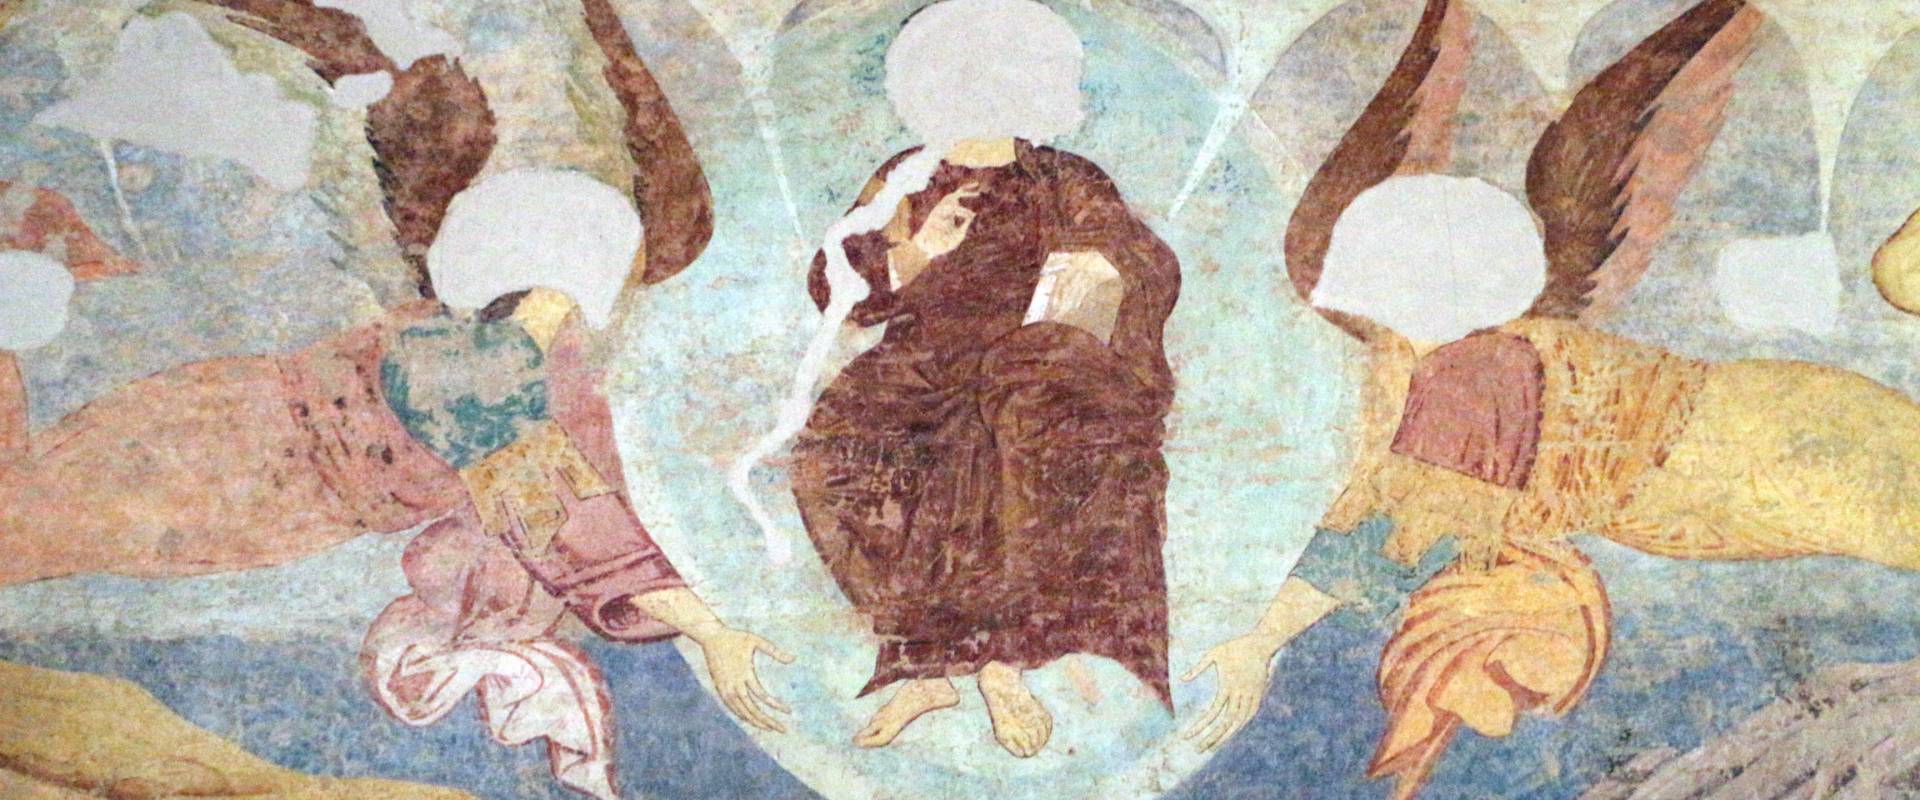 Maestro di san bartolomeo, ascensione, apostoli, storie di s. bartolomeo ed evangelisti, da s. bartolomeo a ferrara, 1264-90 ca. 04 photo by Sailko